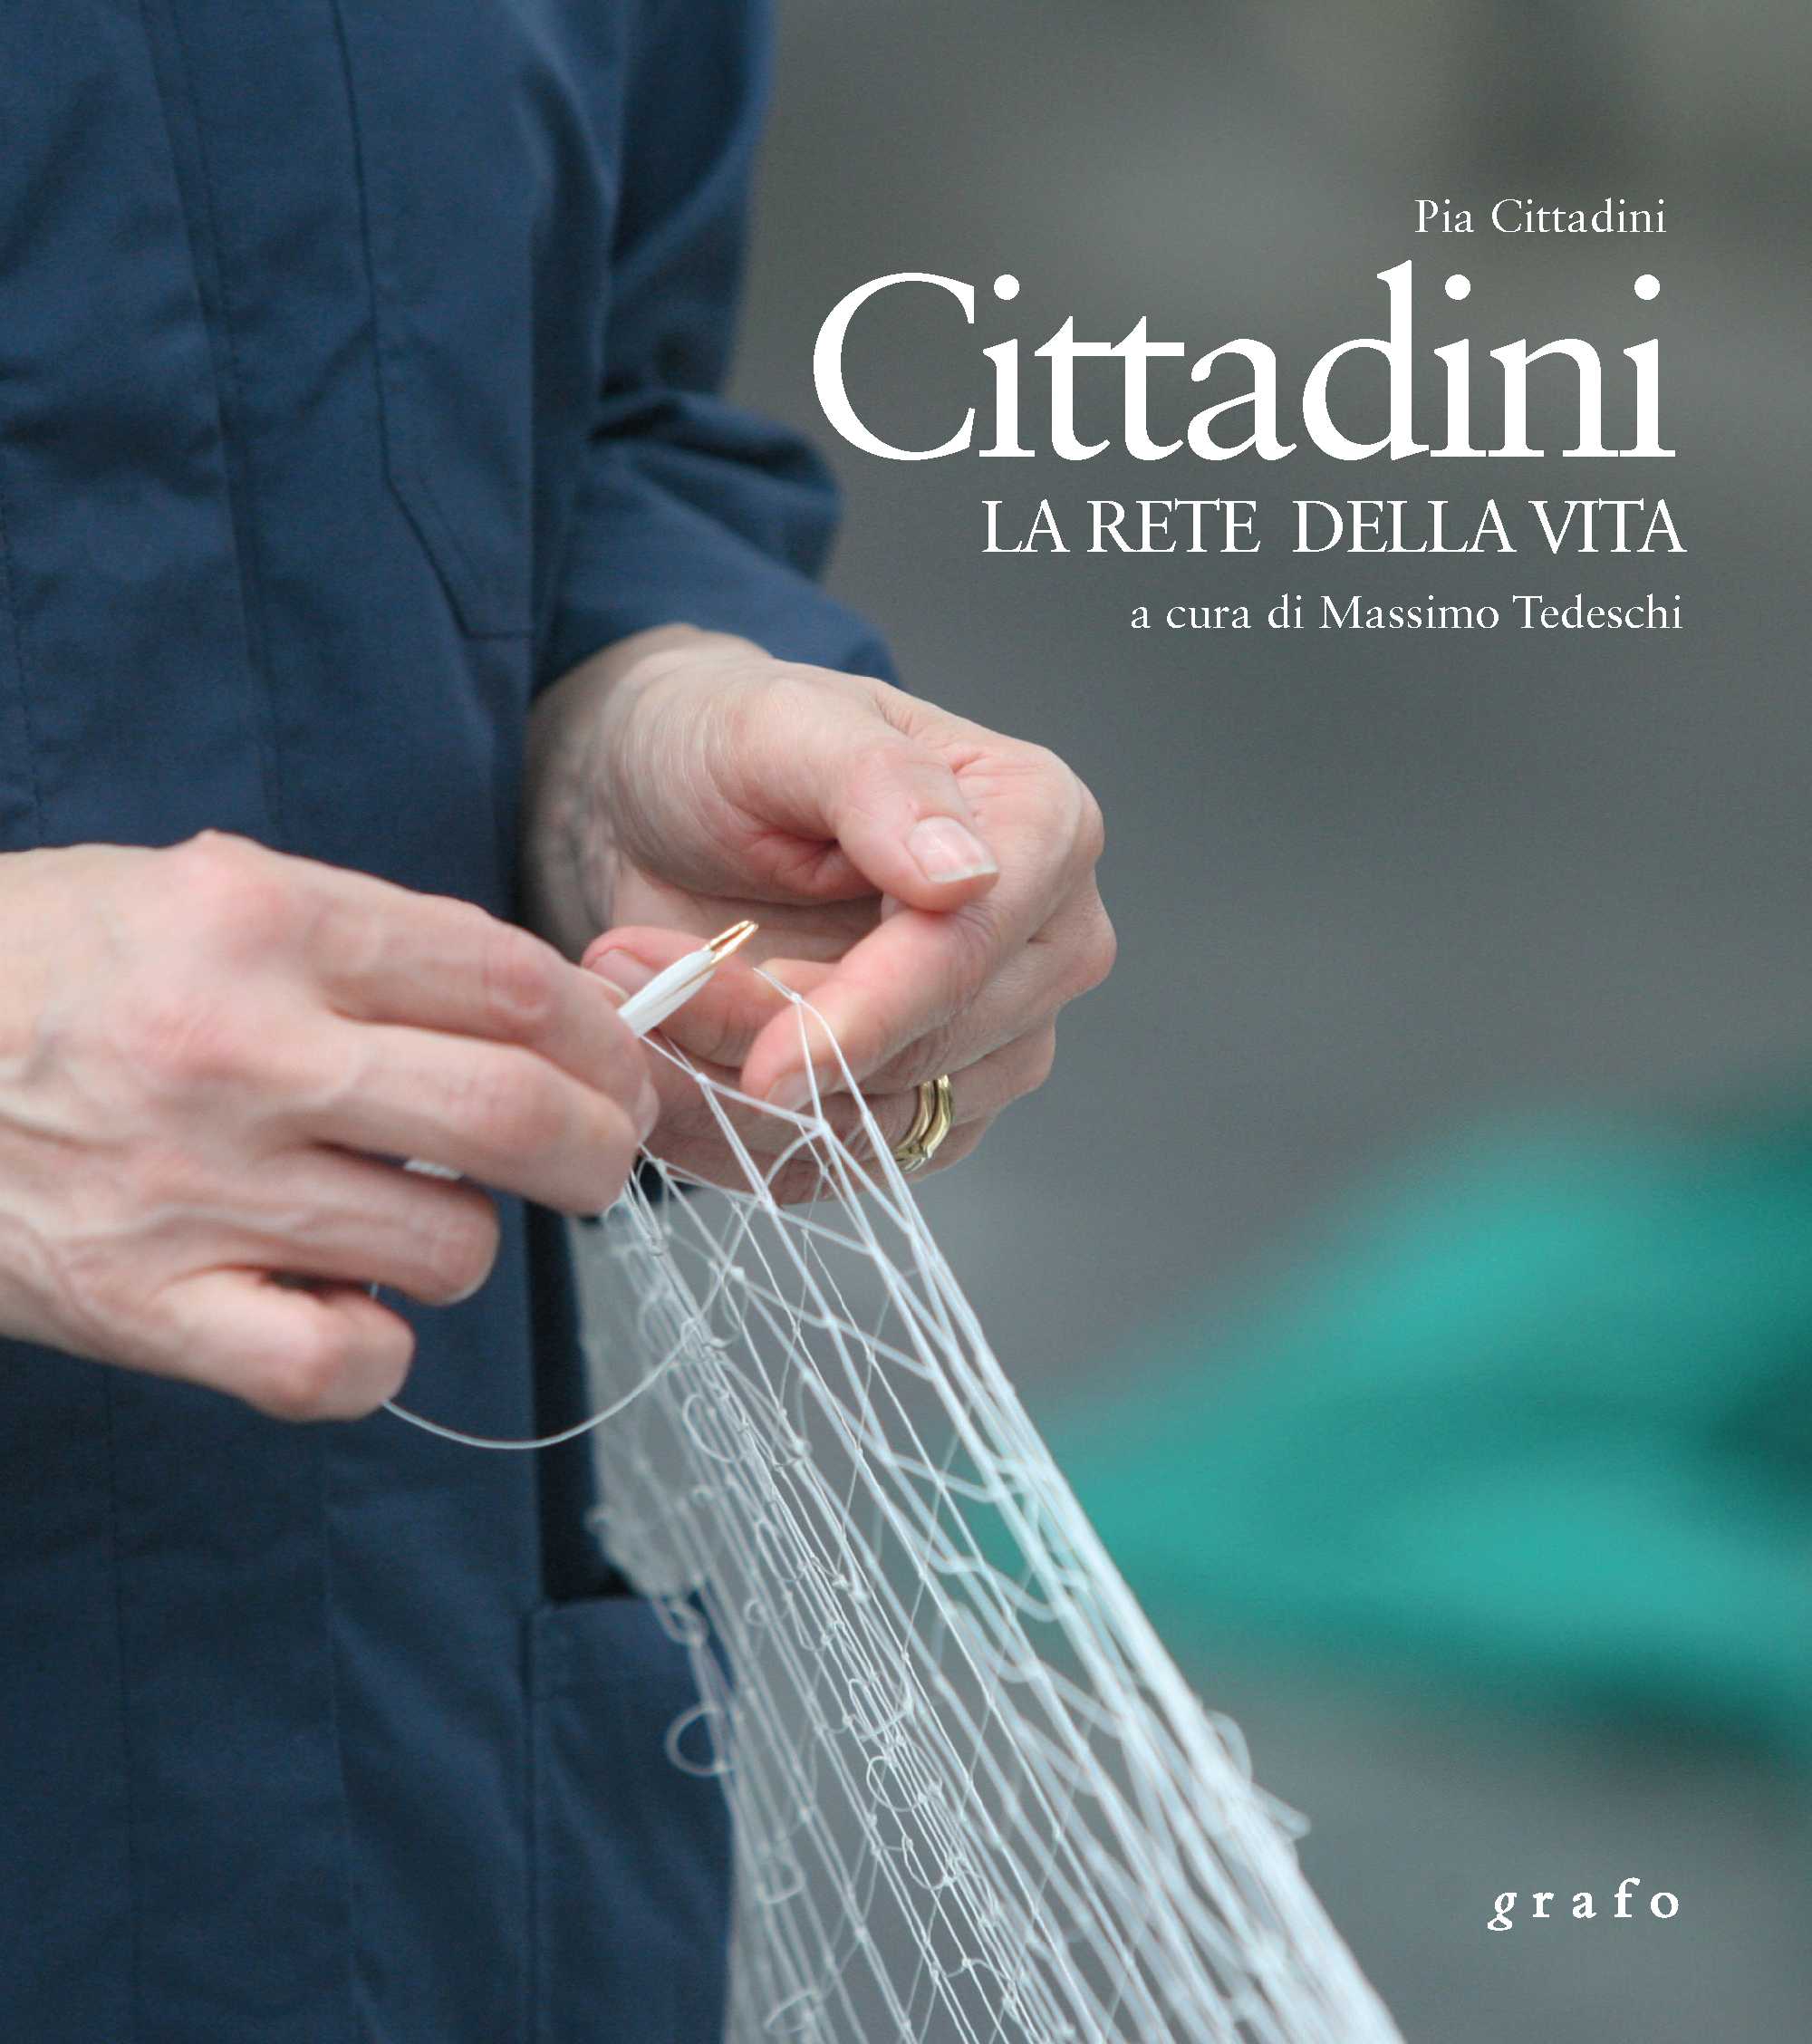 Coversheet of the book "Cittadini, la Rete della Vita"